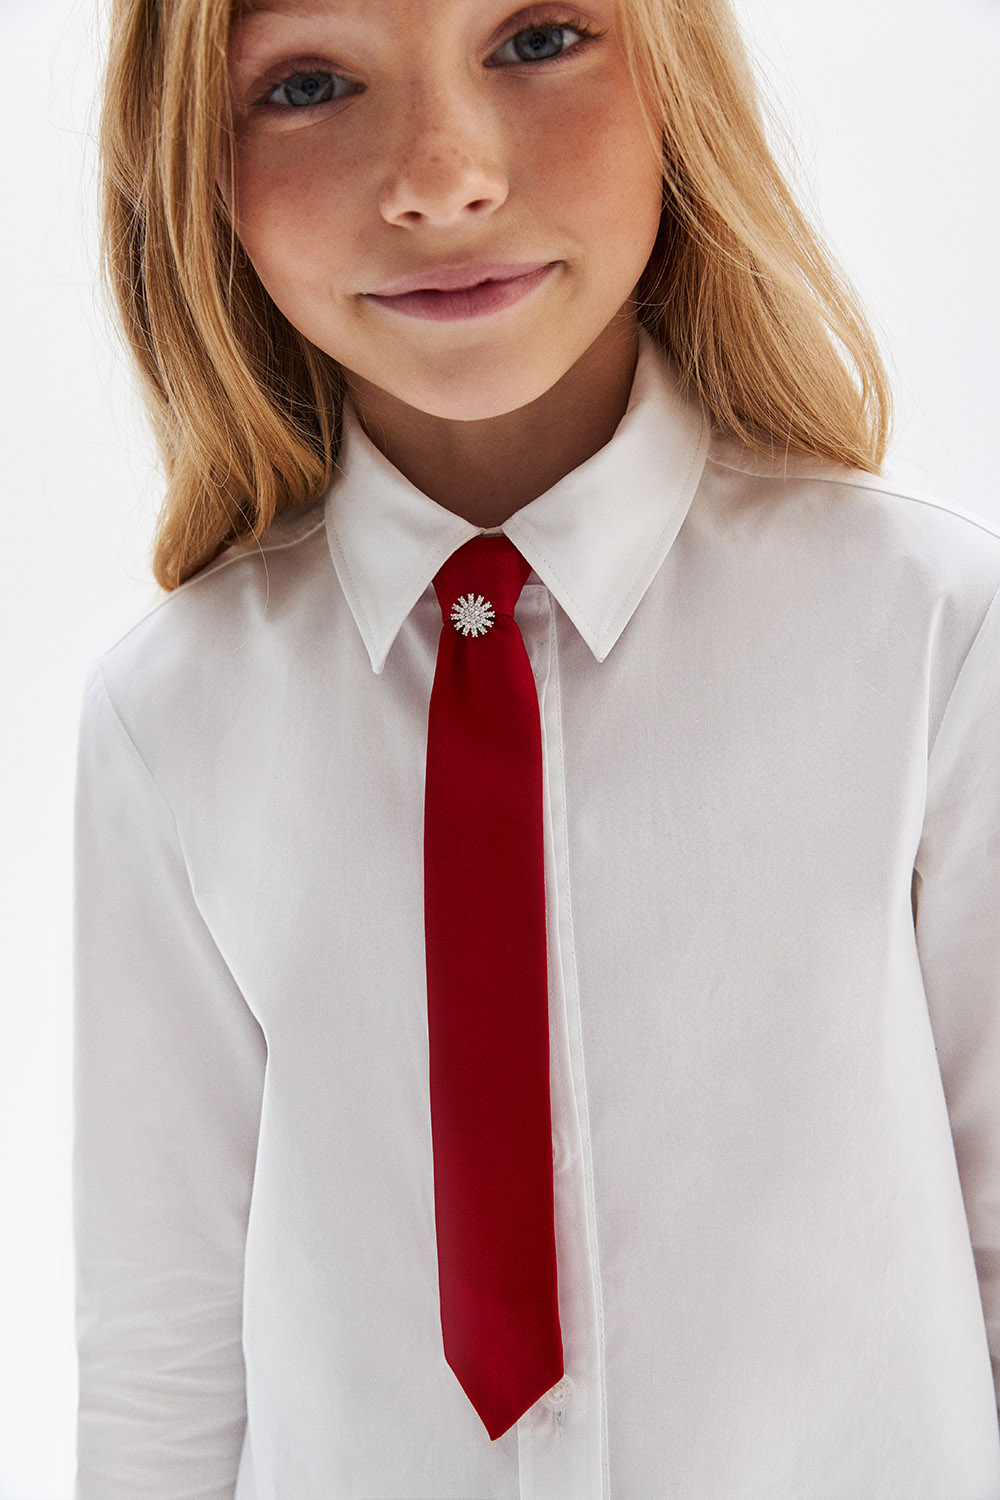 Узкий, укороченный галстук с фиксированным узлом (SSFSG-229-27904-416) Silver spoon